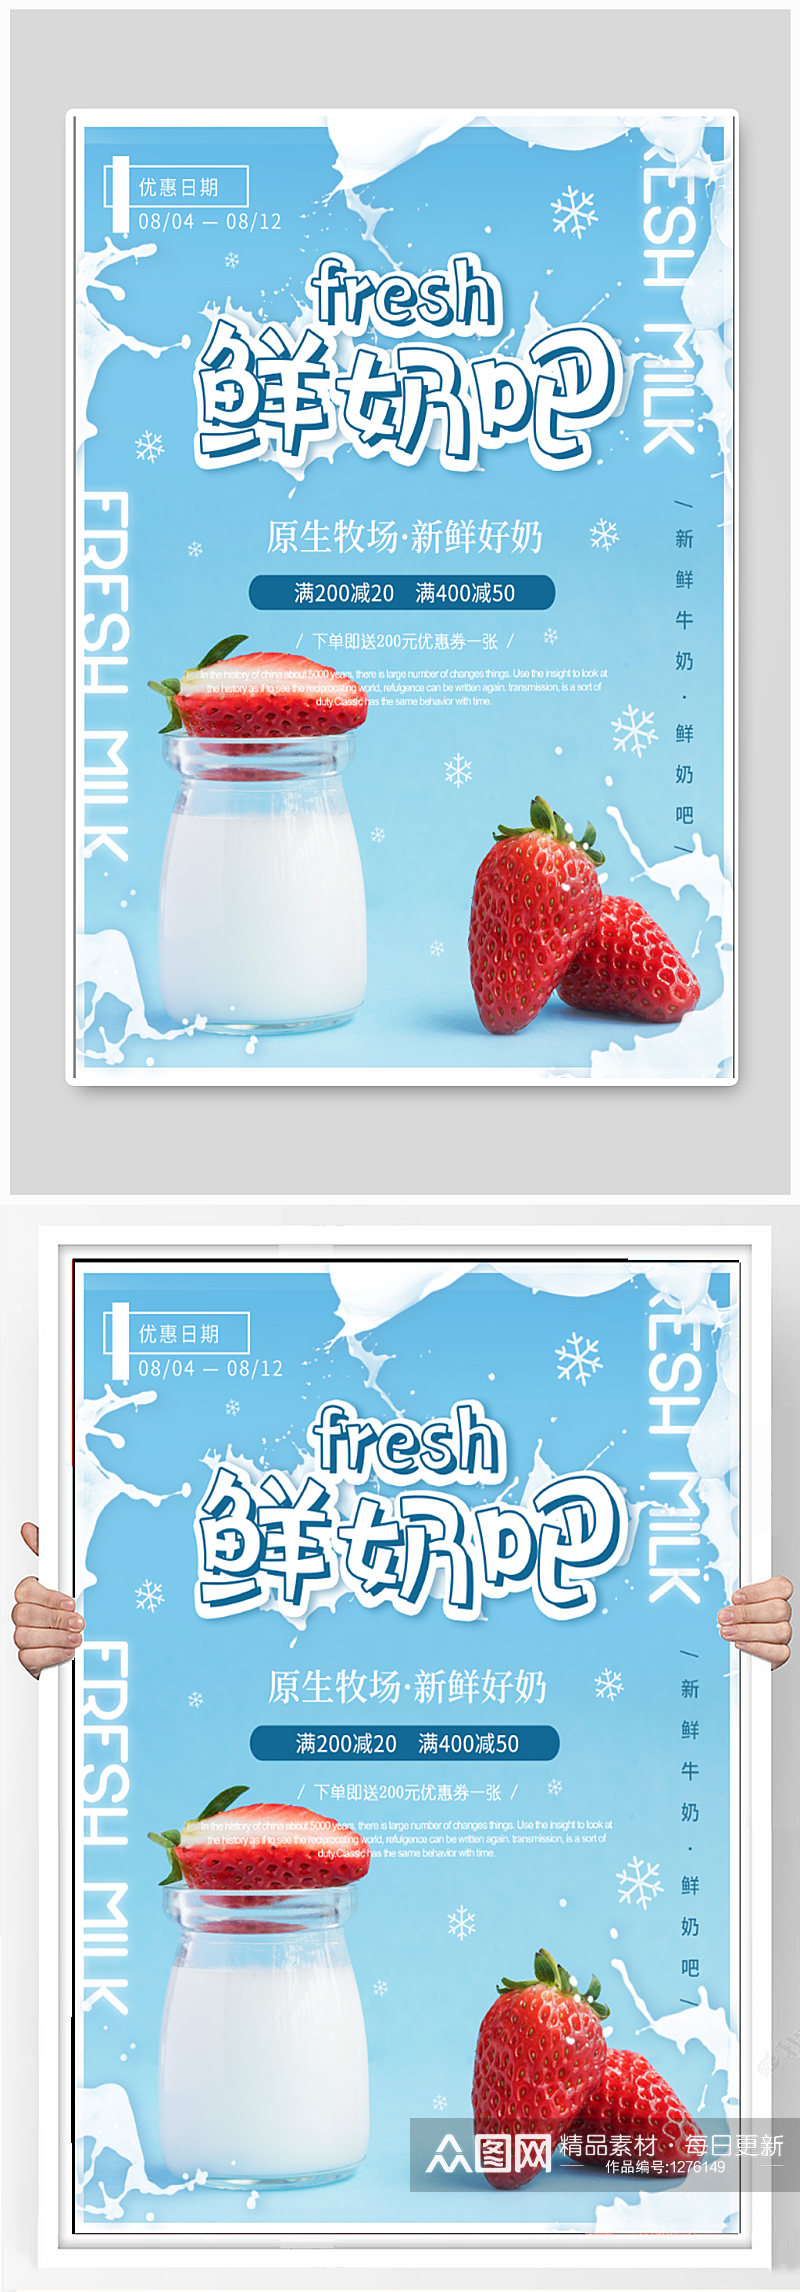 鲜奶吧商铺宣传海报素材